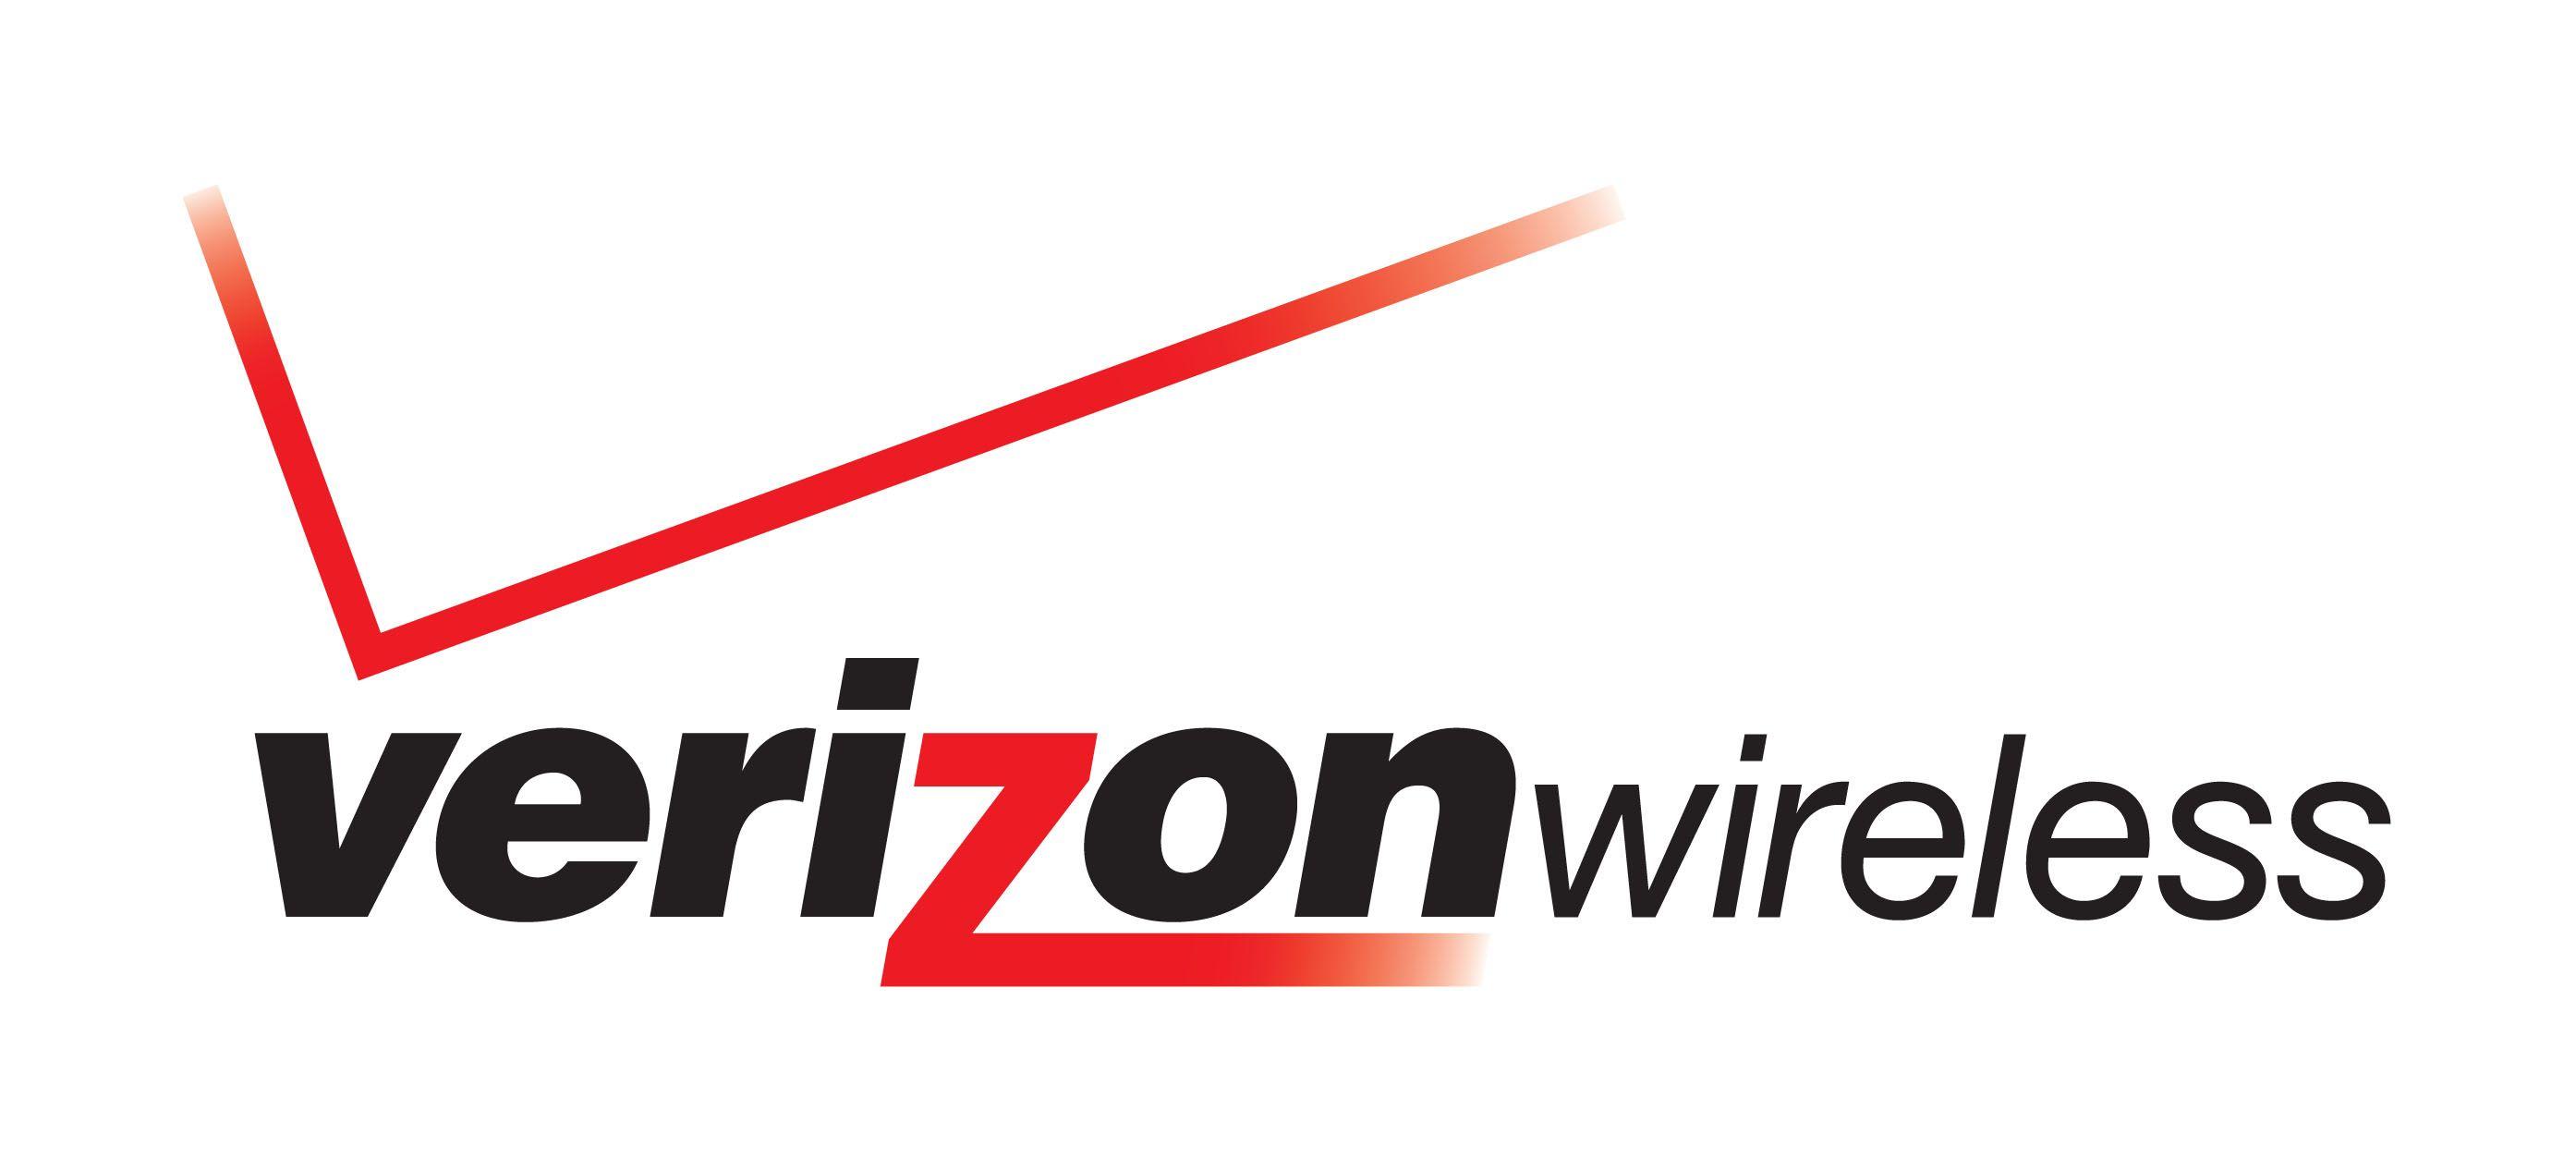 New Verizon Logo - Debbie Millman: Verizon's new logo is 'boring'